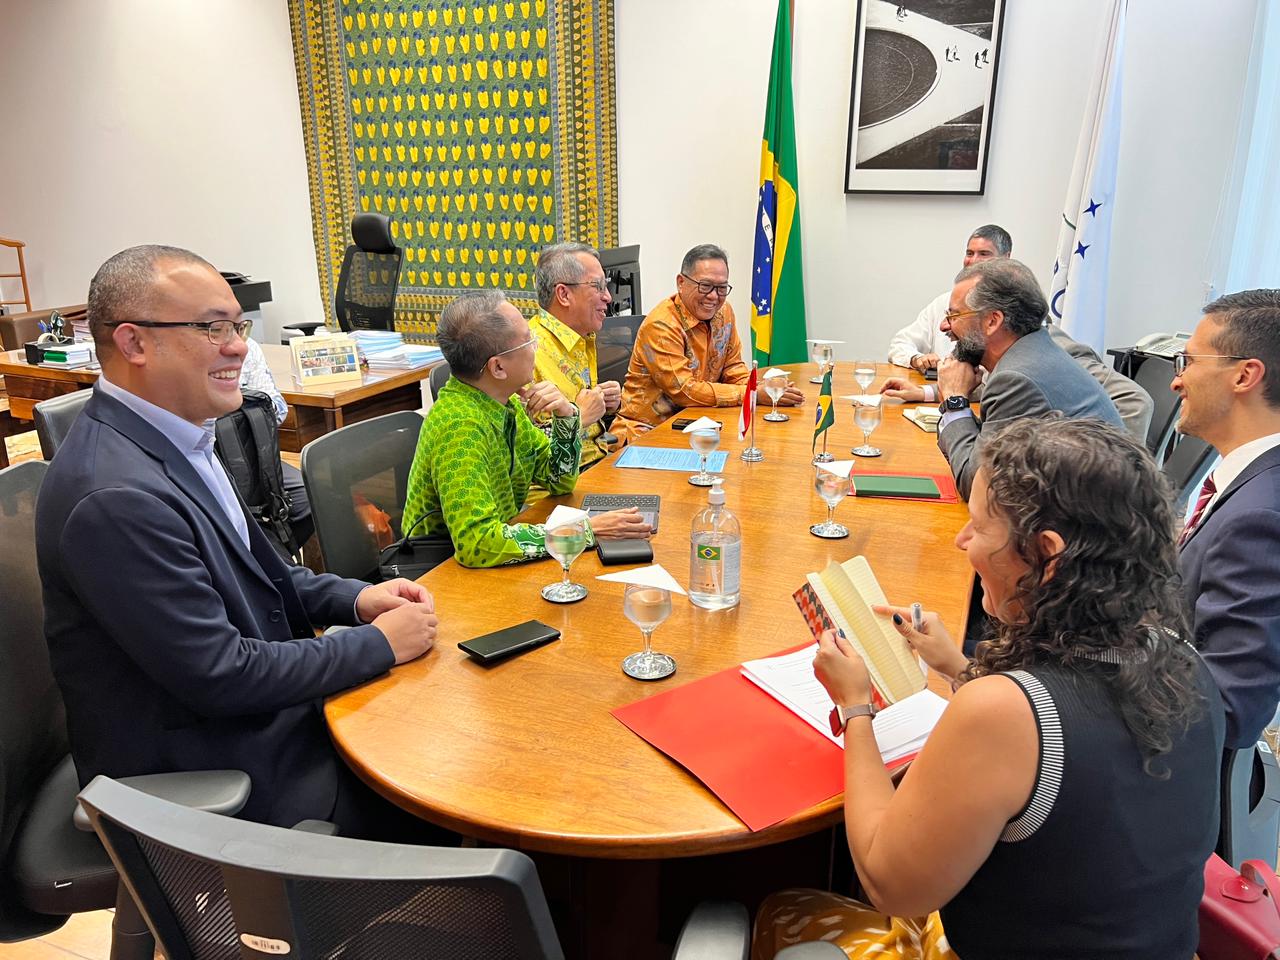 O sherpa do Brasil, o embaixador Mauricio Lyrio, em reunião bilateral com a delegação da Indonésia, país que presidiu o G20 em 2022. Foto: Divulgação/MRE